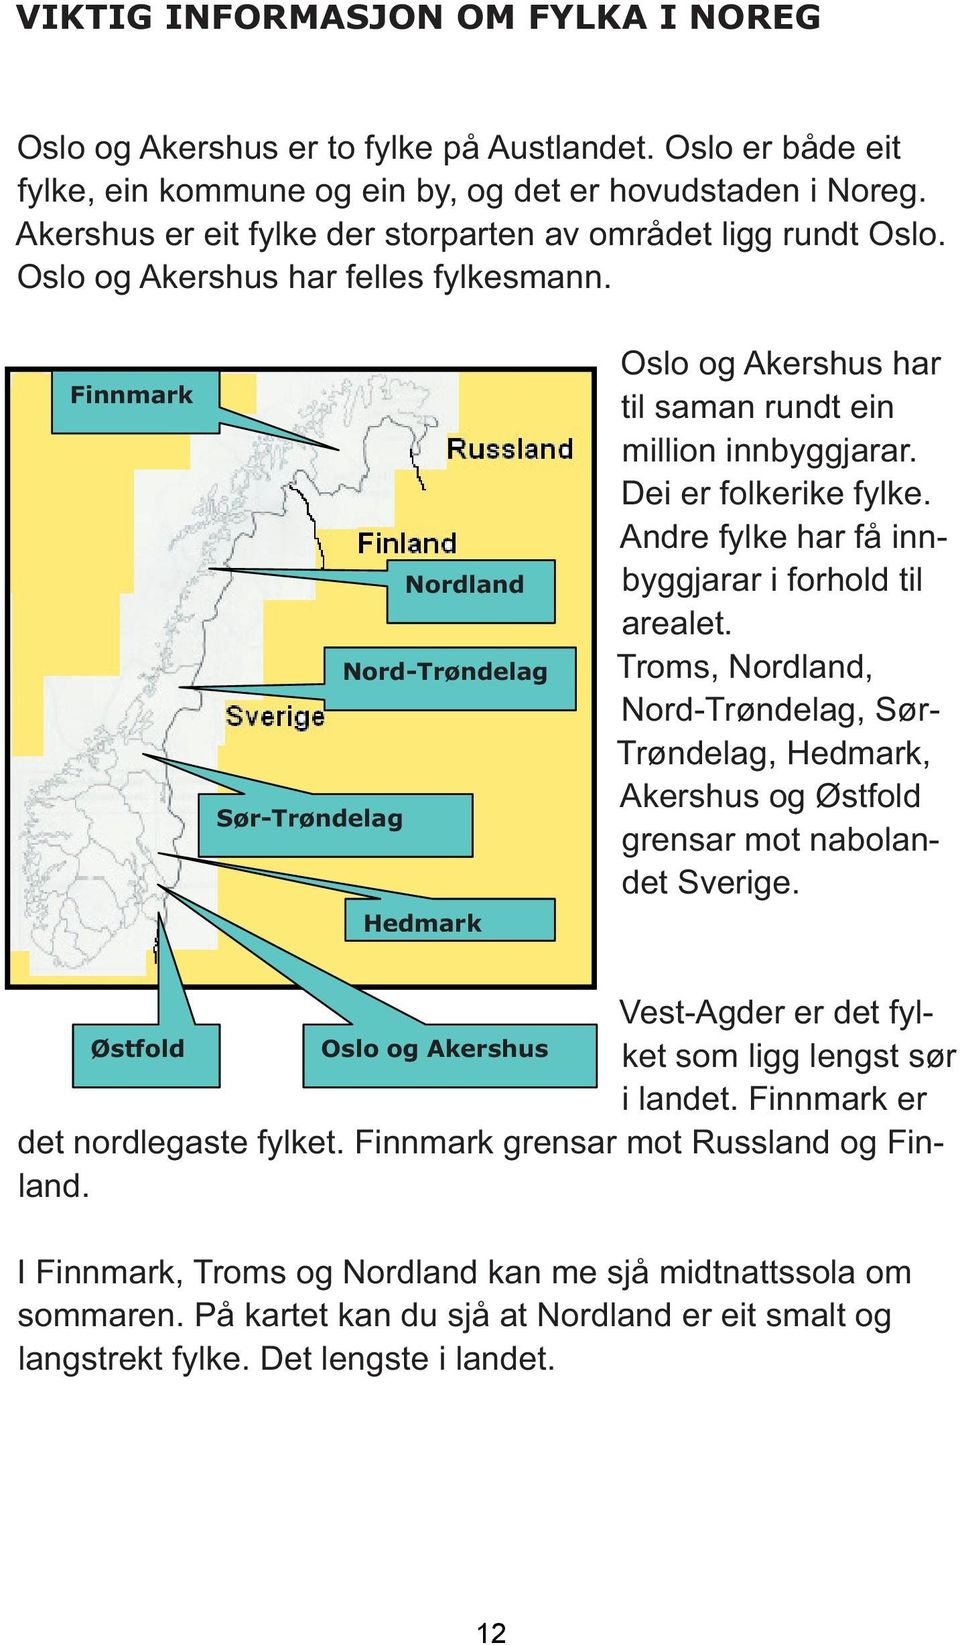 Finnmark Nordland Nord-Trøndelag Sør-Trøndelag Hedmark Oslo og Akershus har til saman rundt ein million innbyggjarar. Dei er folkerike fylke. Andre fylke har få innbyggjarar i forhold til arealet.